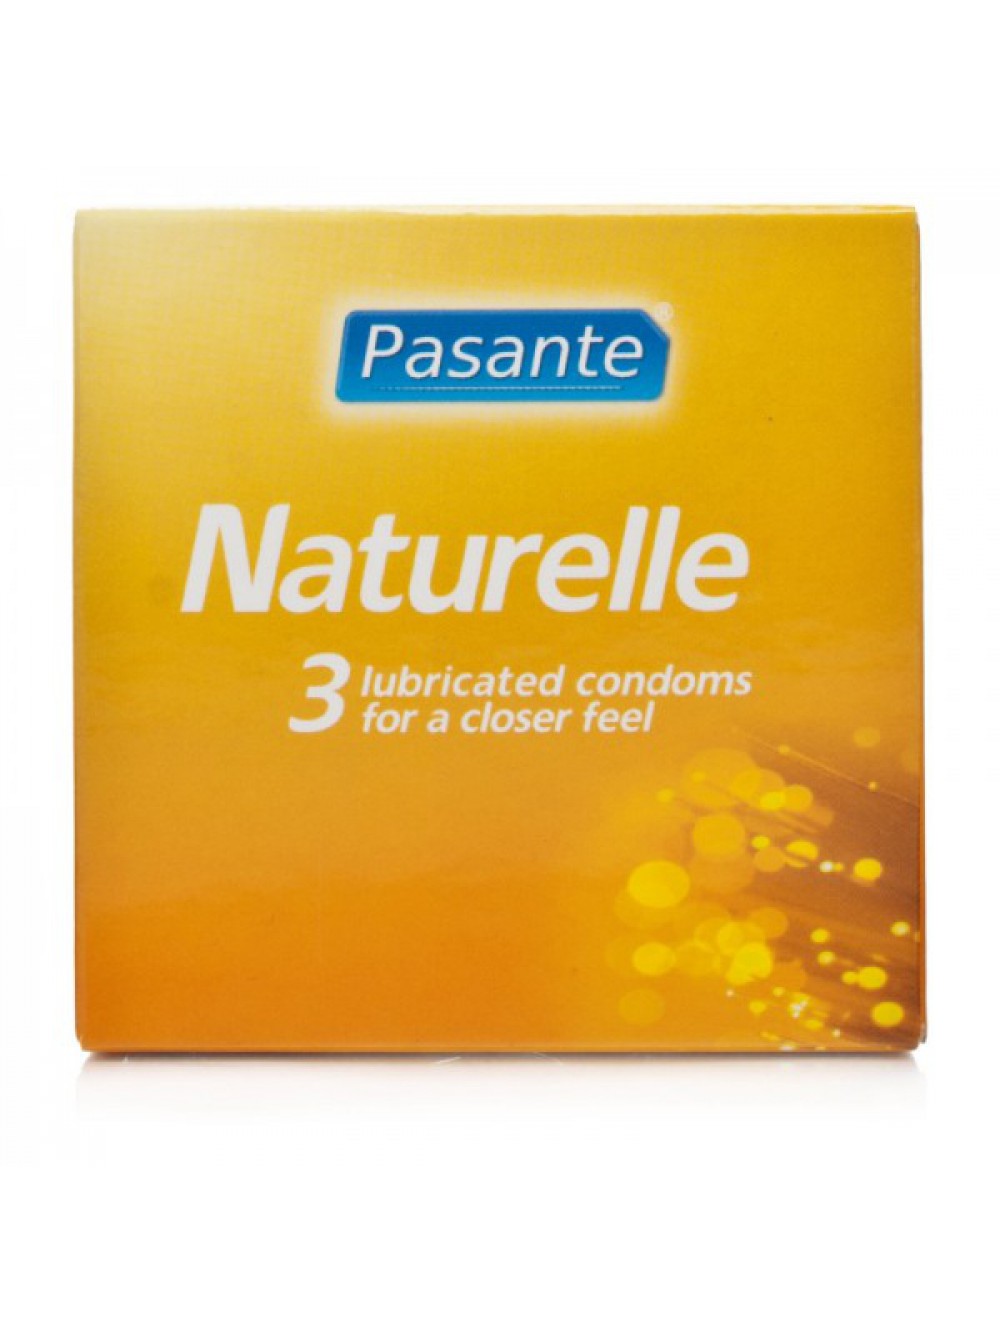 Pasante Naturelle 3 p. condoms 5032331008047